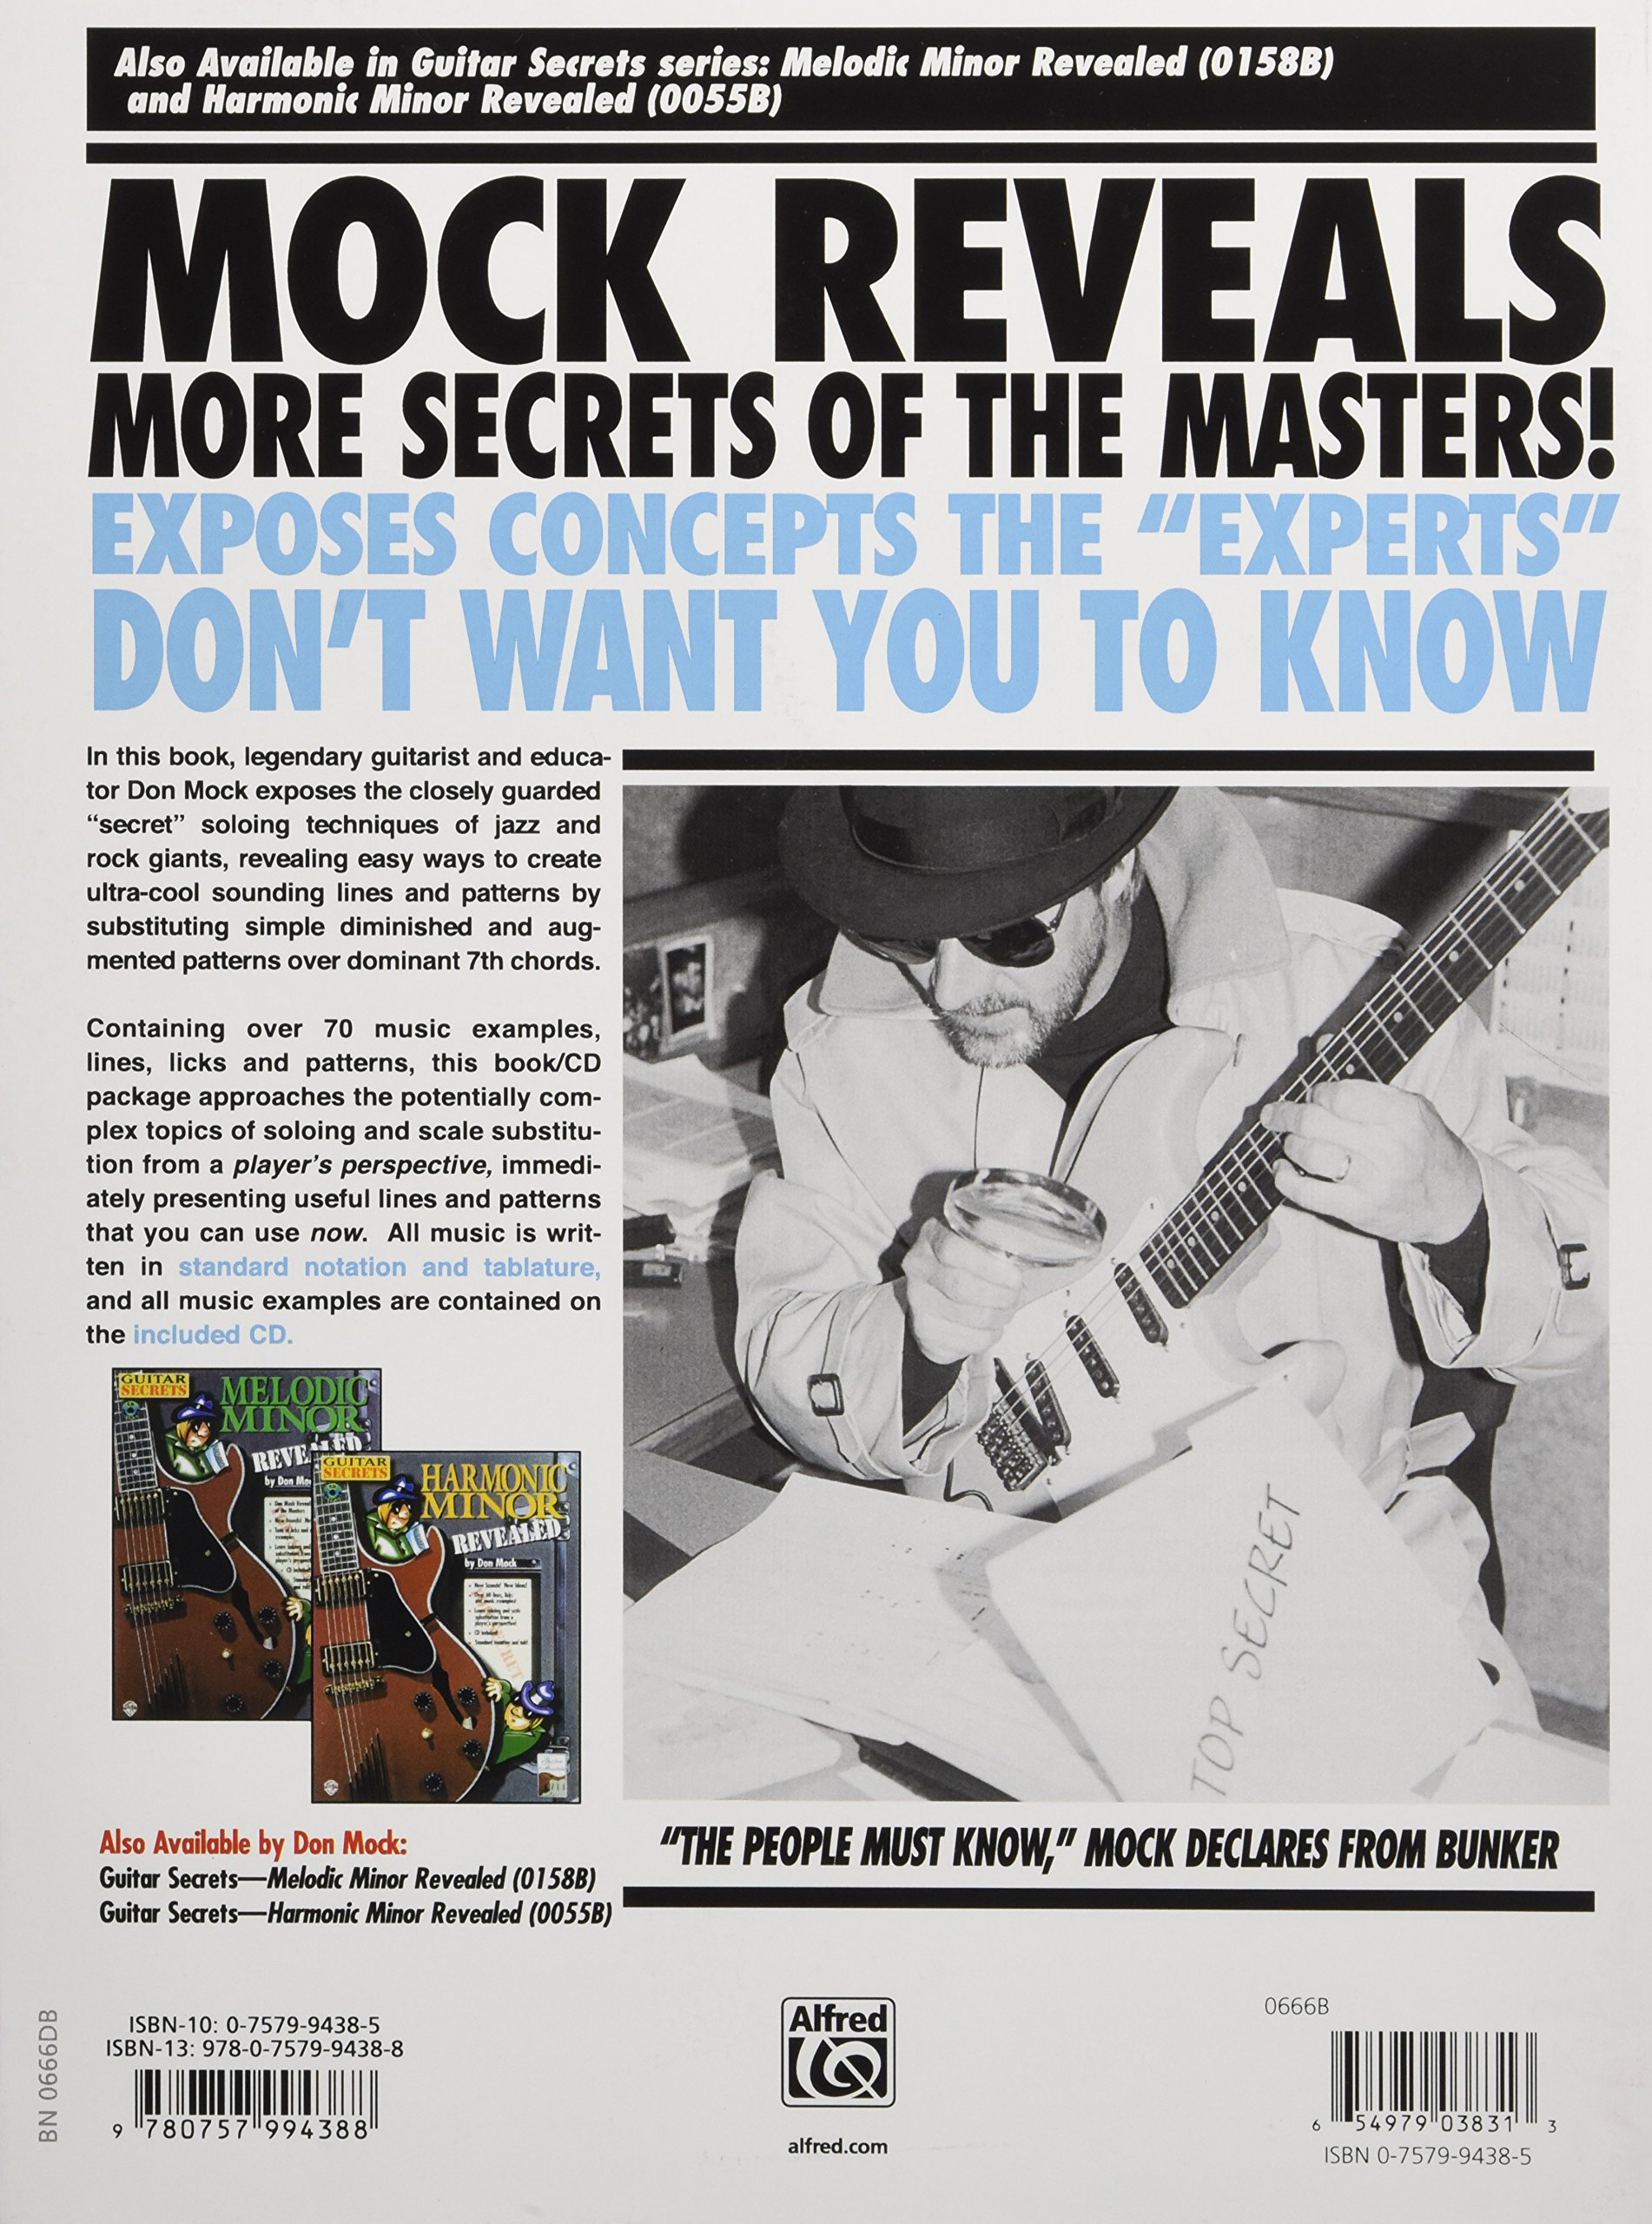 Don mock guitar secrets revealed pdf merger